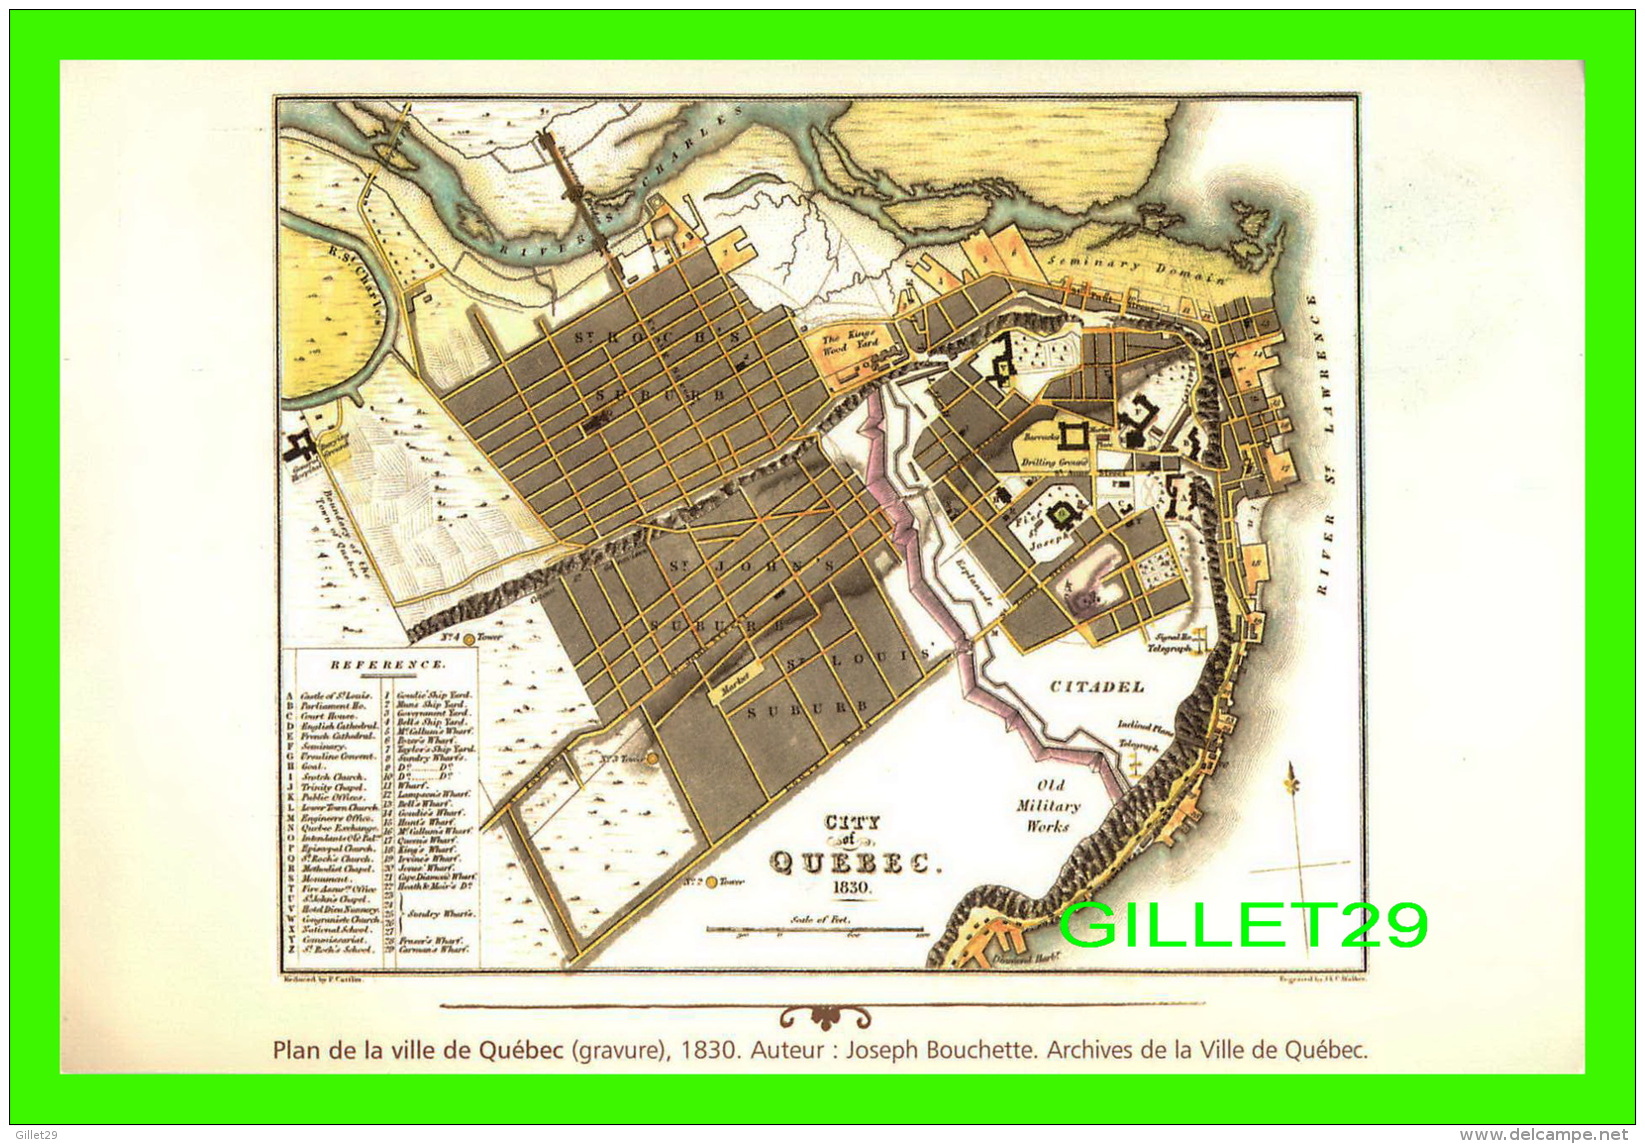 MAPS, CARTES GÉOGRAPHIQUES - PLAN DE LA VILLE DE QUÉBEC, GRAVURE DE 1830 - AUTEUR, JOSEPH BOUCHETTE - - Carte Geografiche